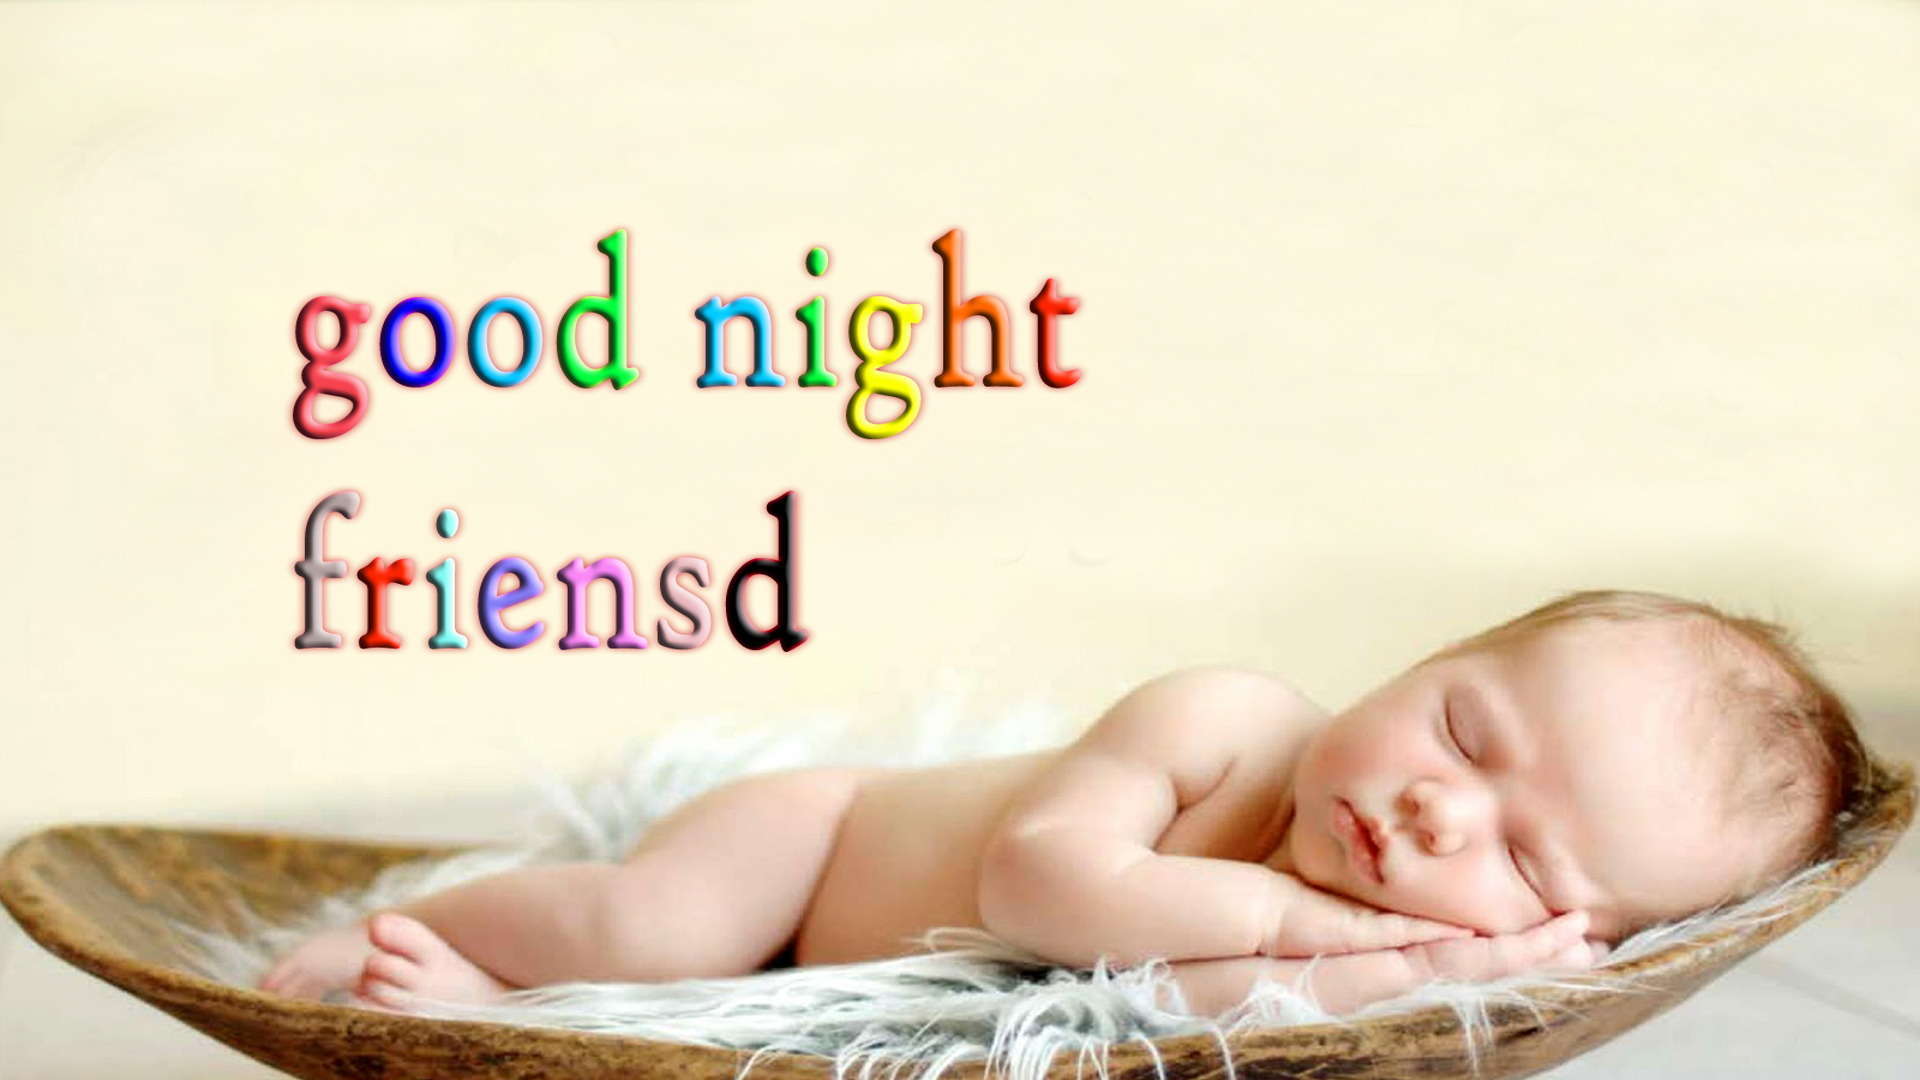 buenas noches baby wallpaper,niño,bebé,producto,texto,dormir